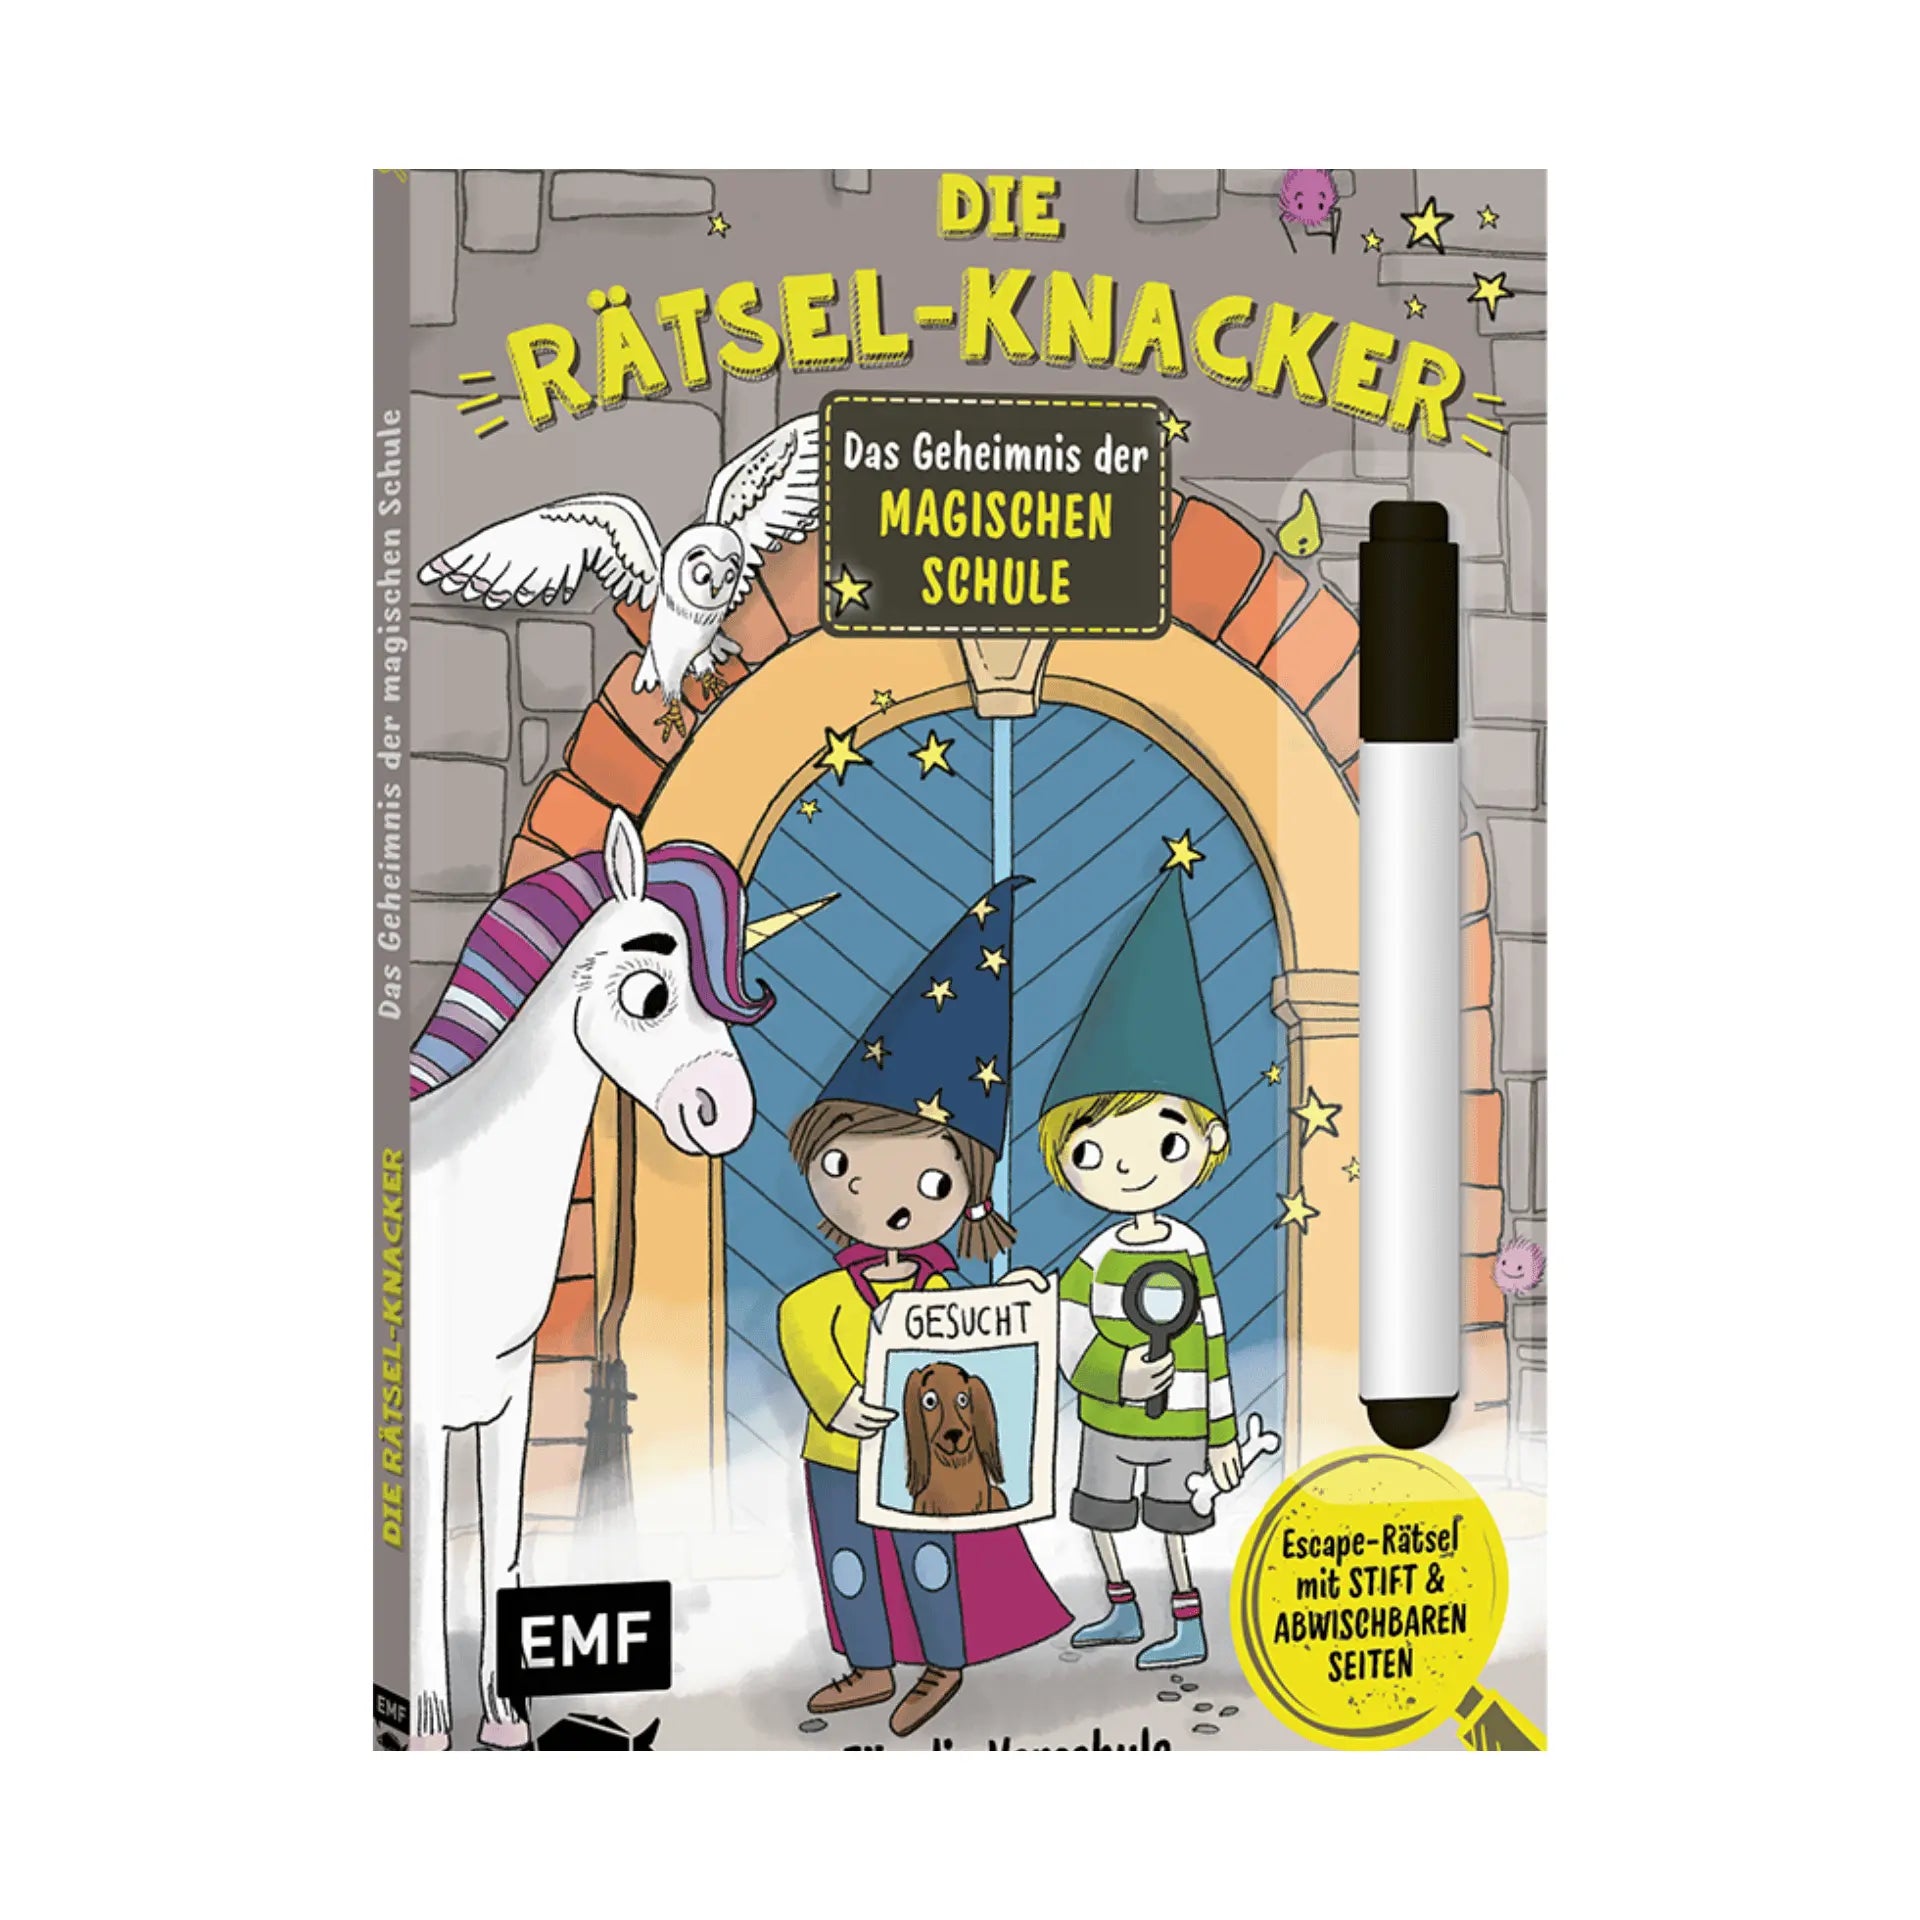 Die Rätsel-Knacker MAGISCHE SCHULE EMF Verlag